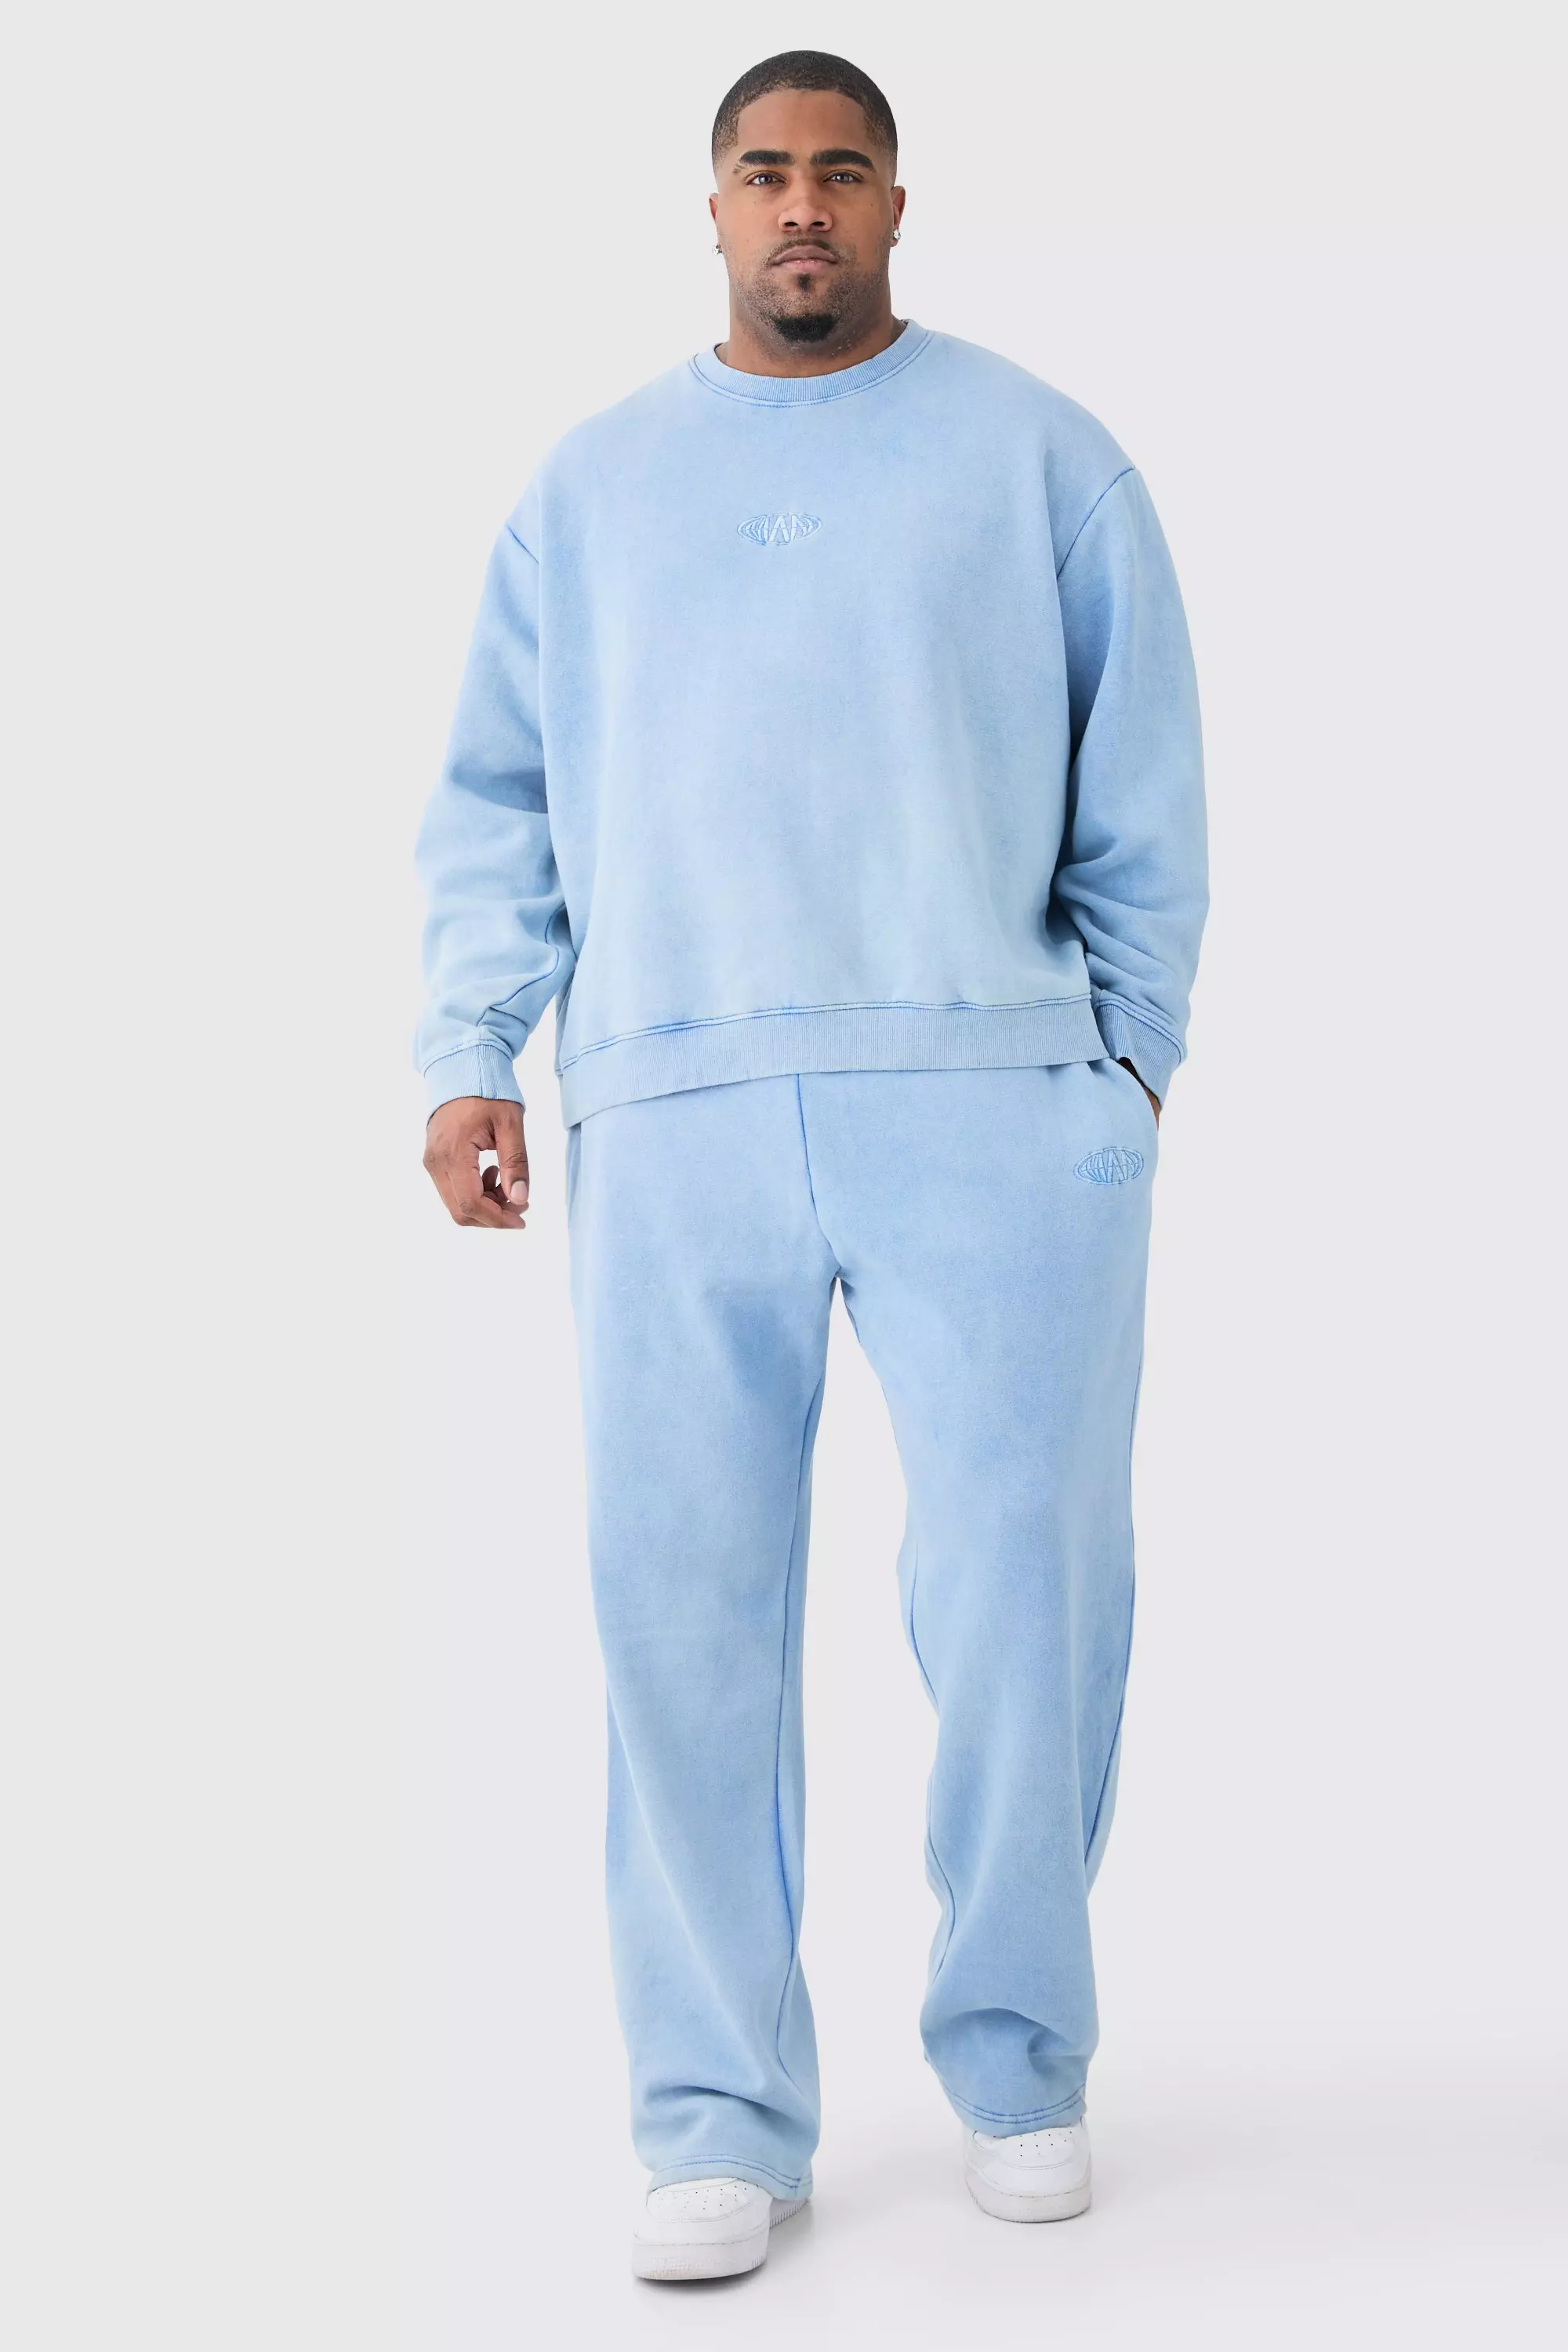 Plus Man Oversized Boxy Acid Wash Sweatshirt Tracksuit cornflower blue